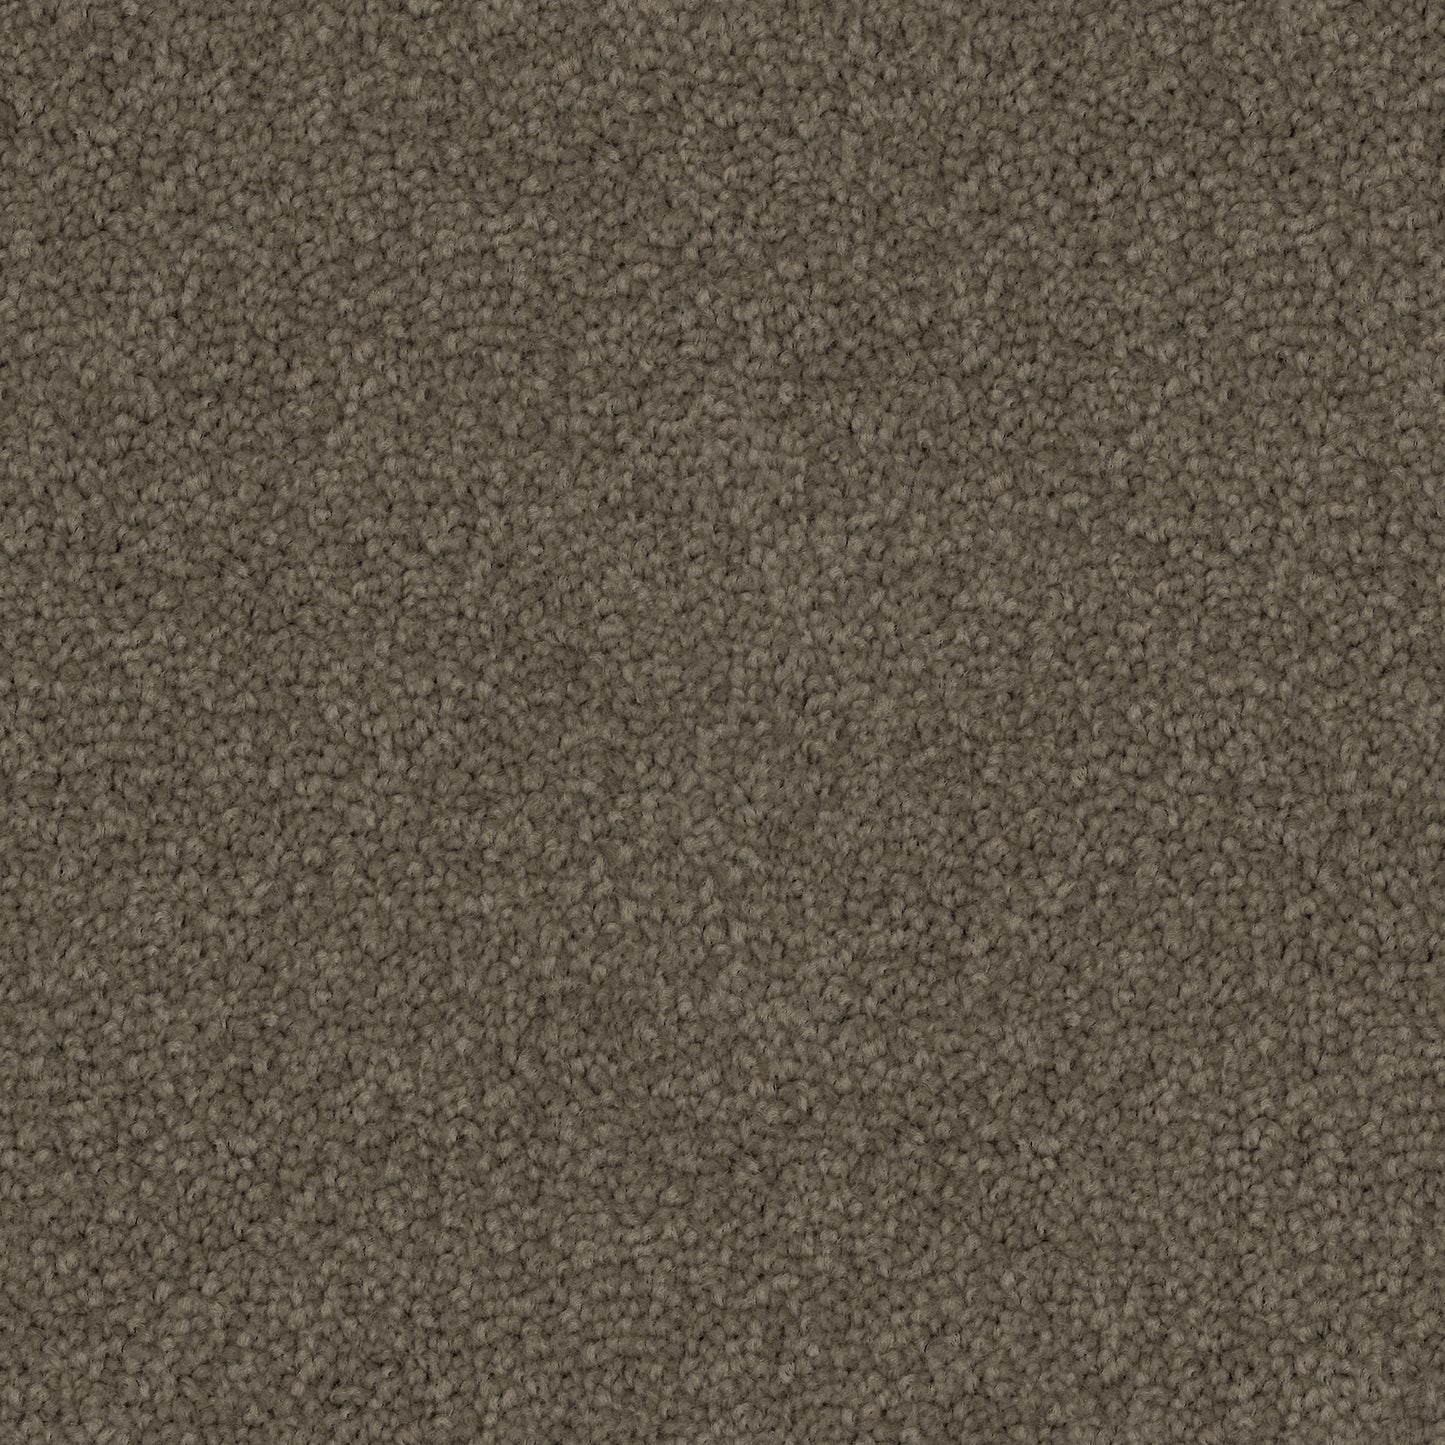 Poly25 Polyester Carpet Pebble Bay